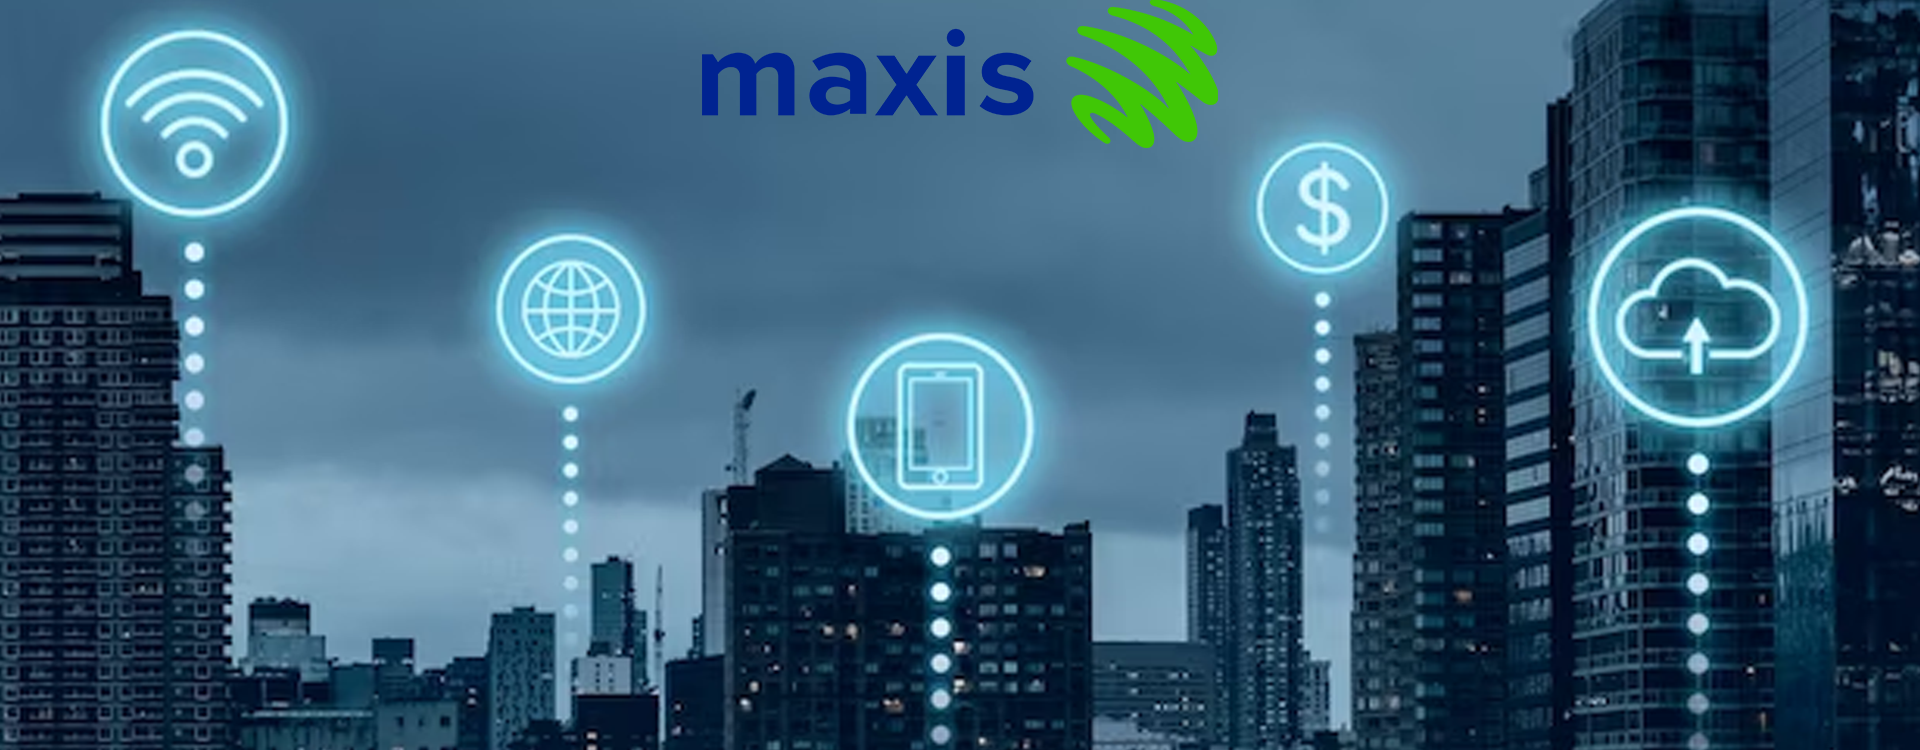 maxis-fibre-coverage